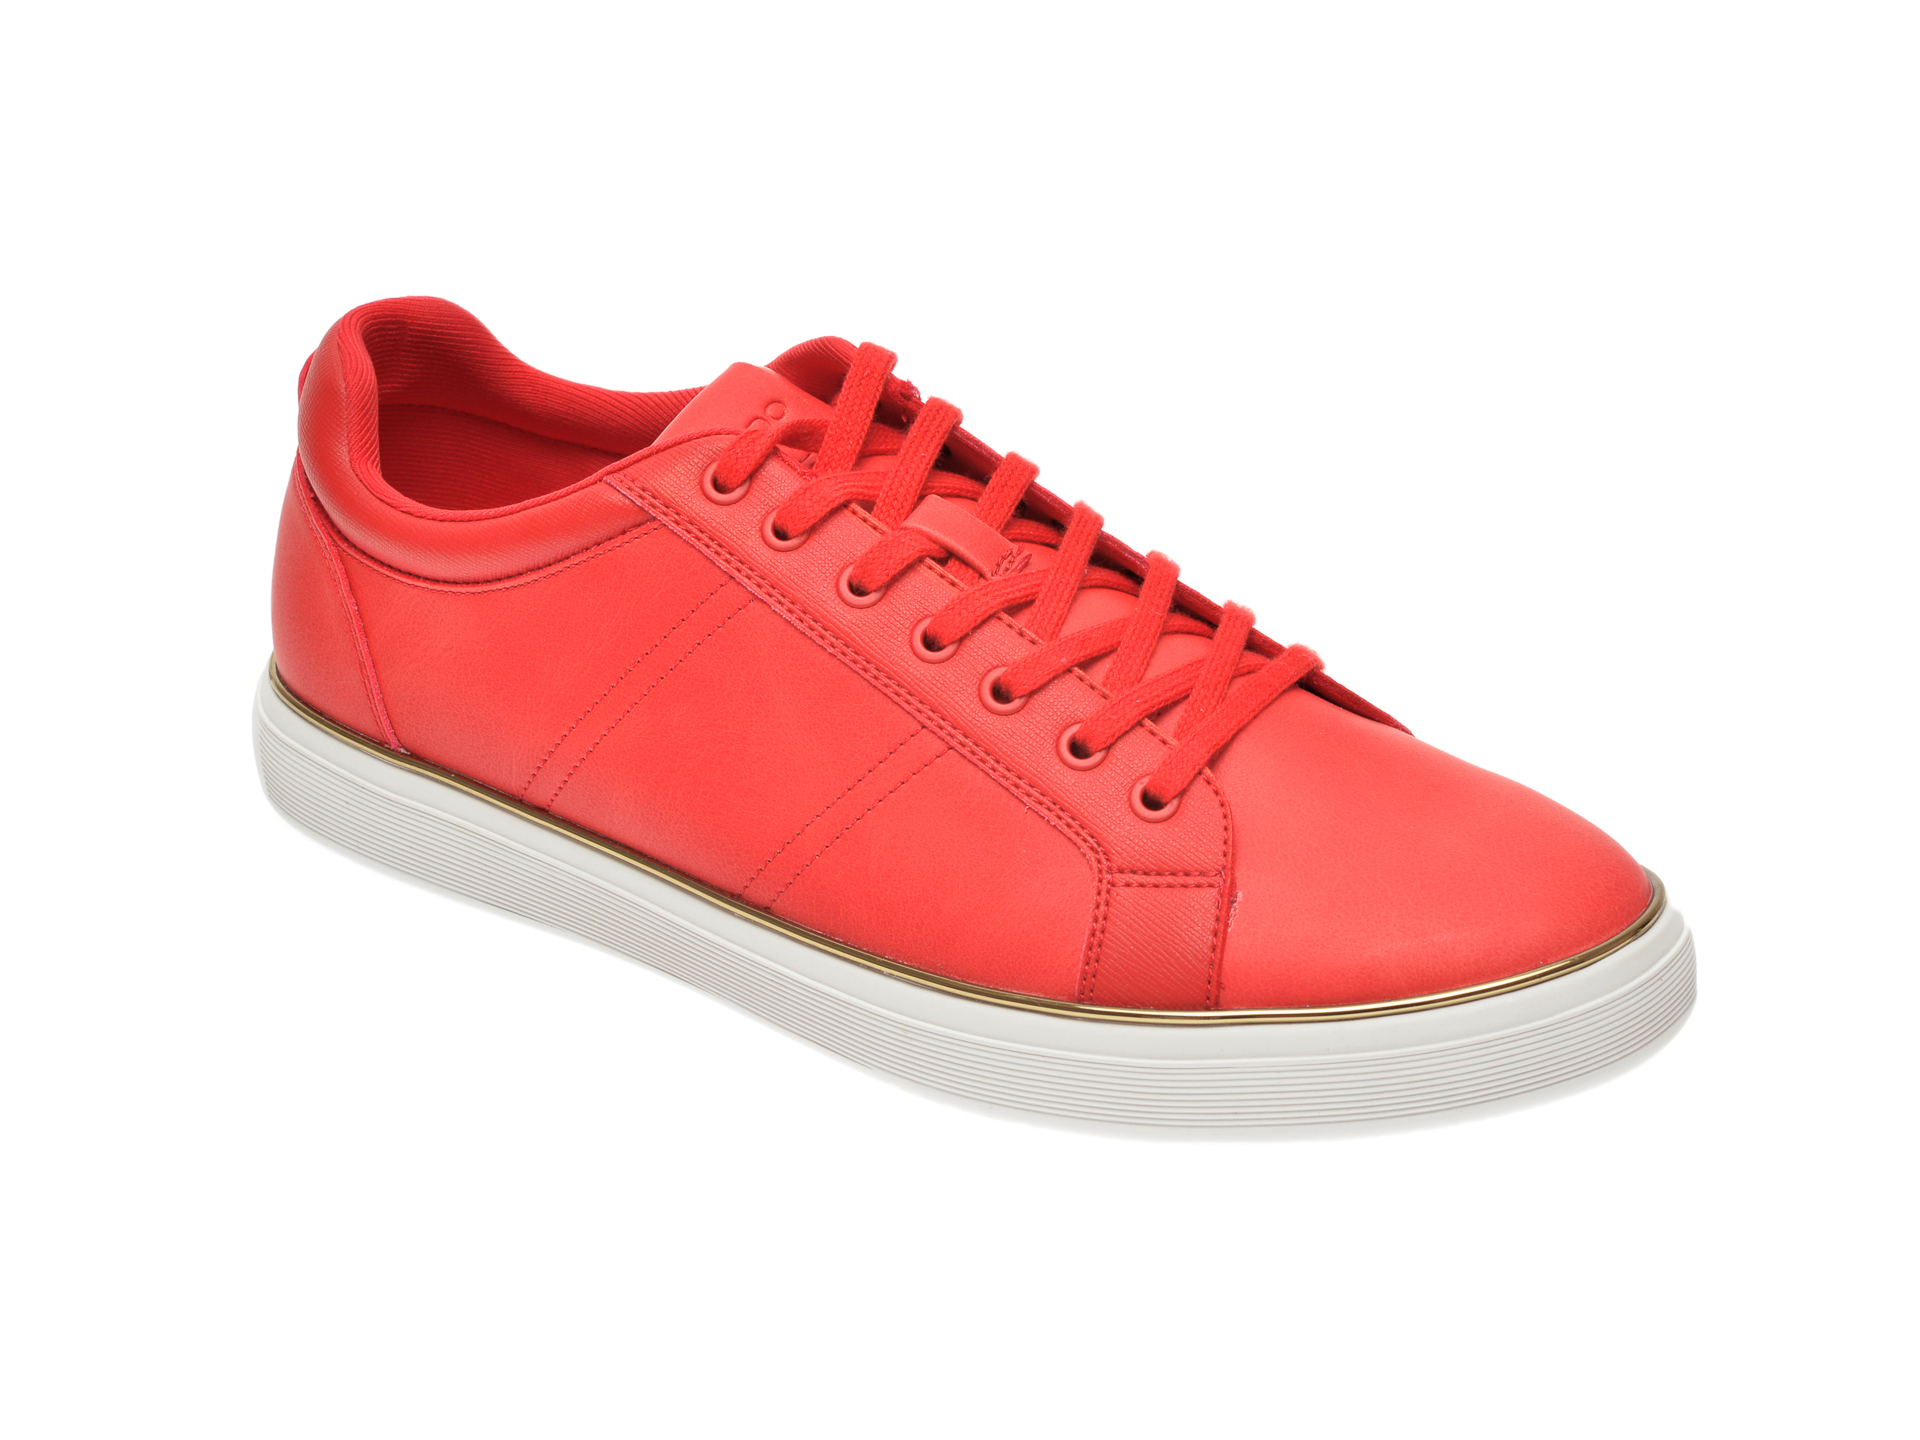 Pantofi sport ALDO rosii, Braunton600, din piele ecologica